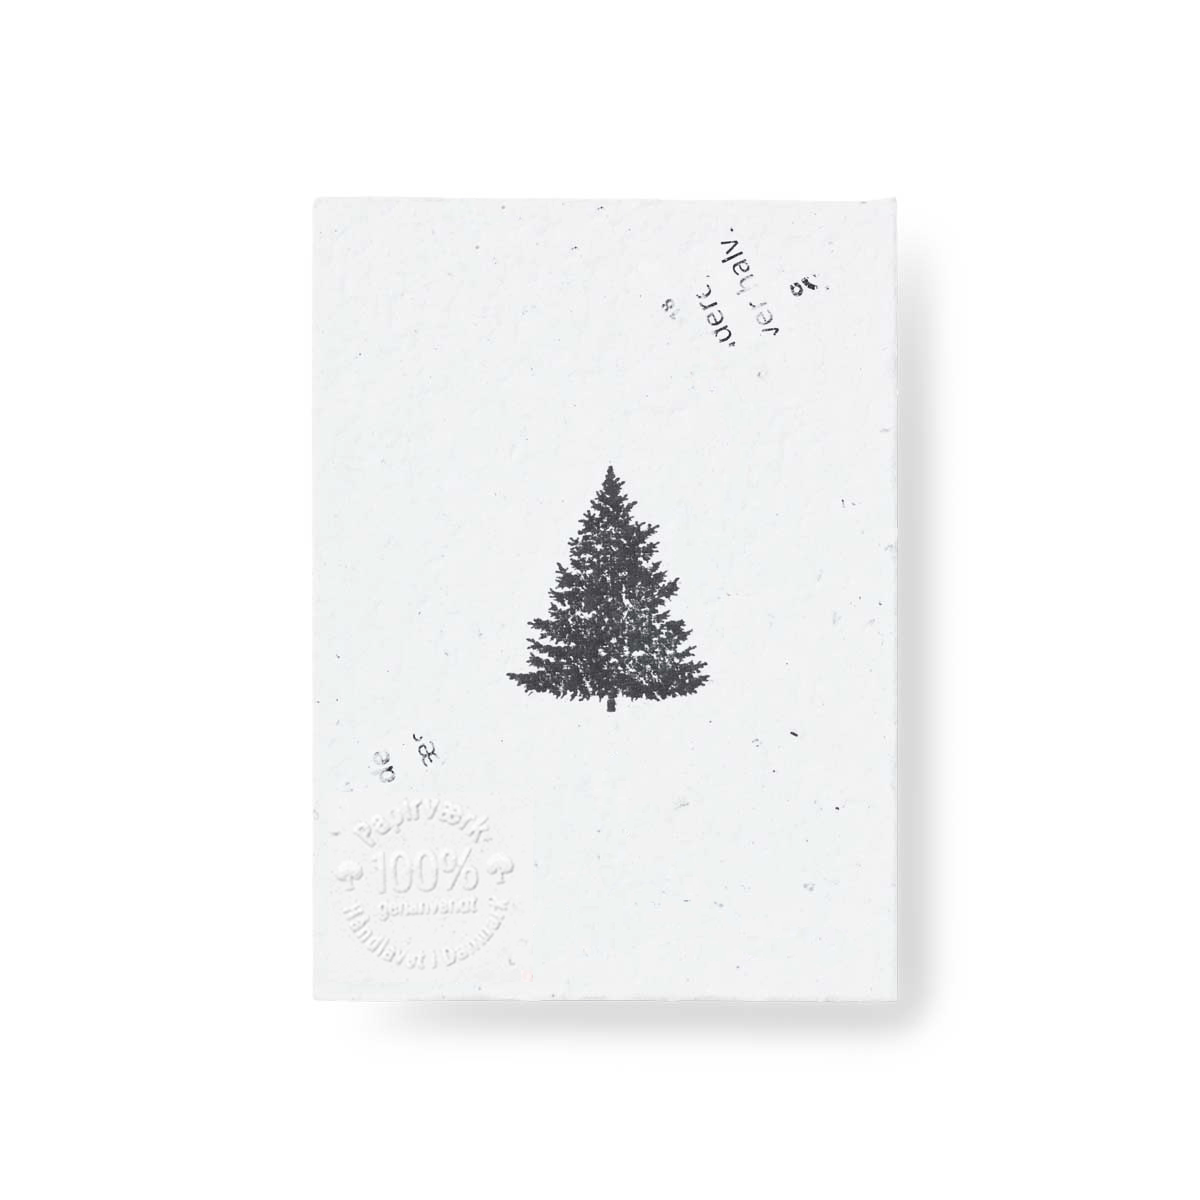 Juletræet - 3 stk (6,75x9 cm) - Papirværk